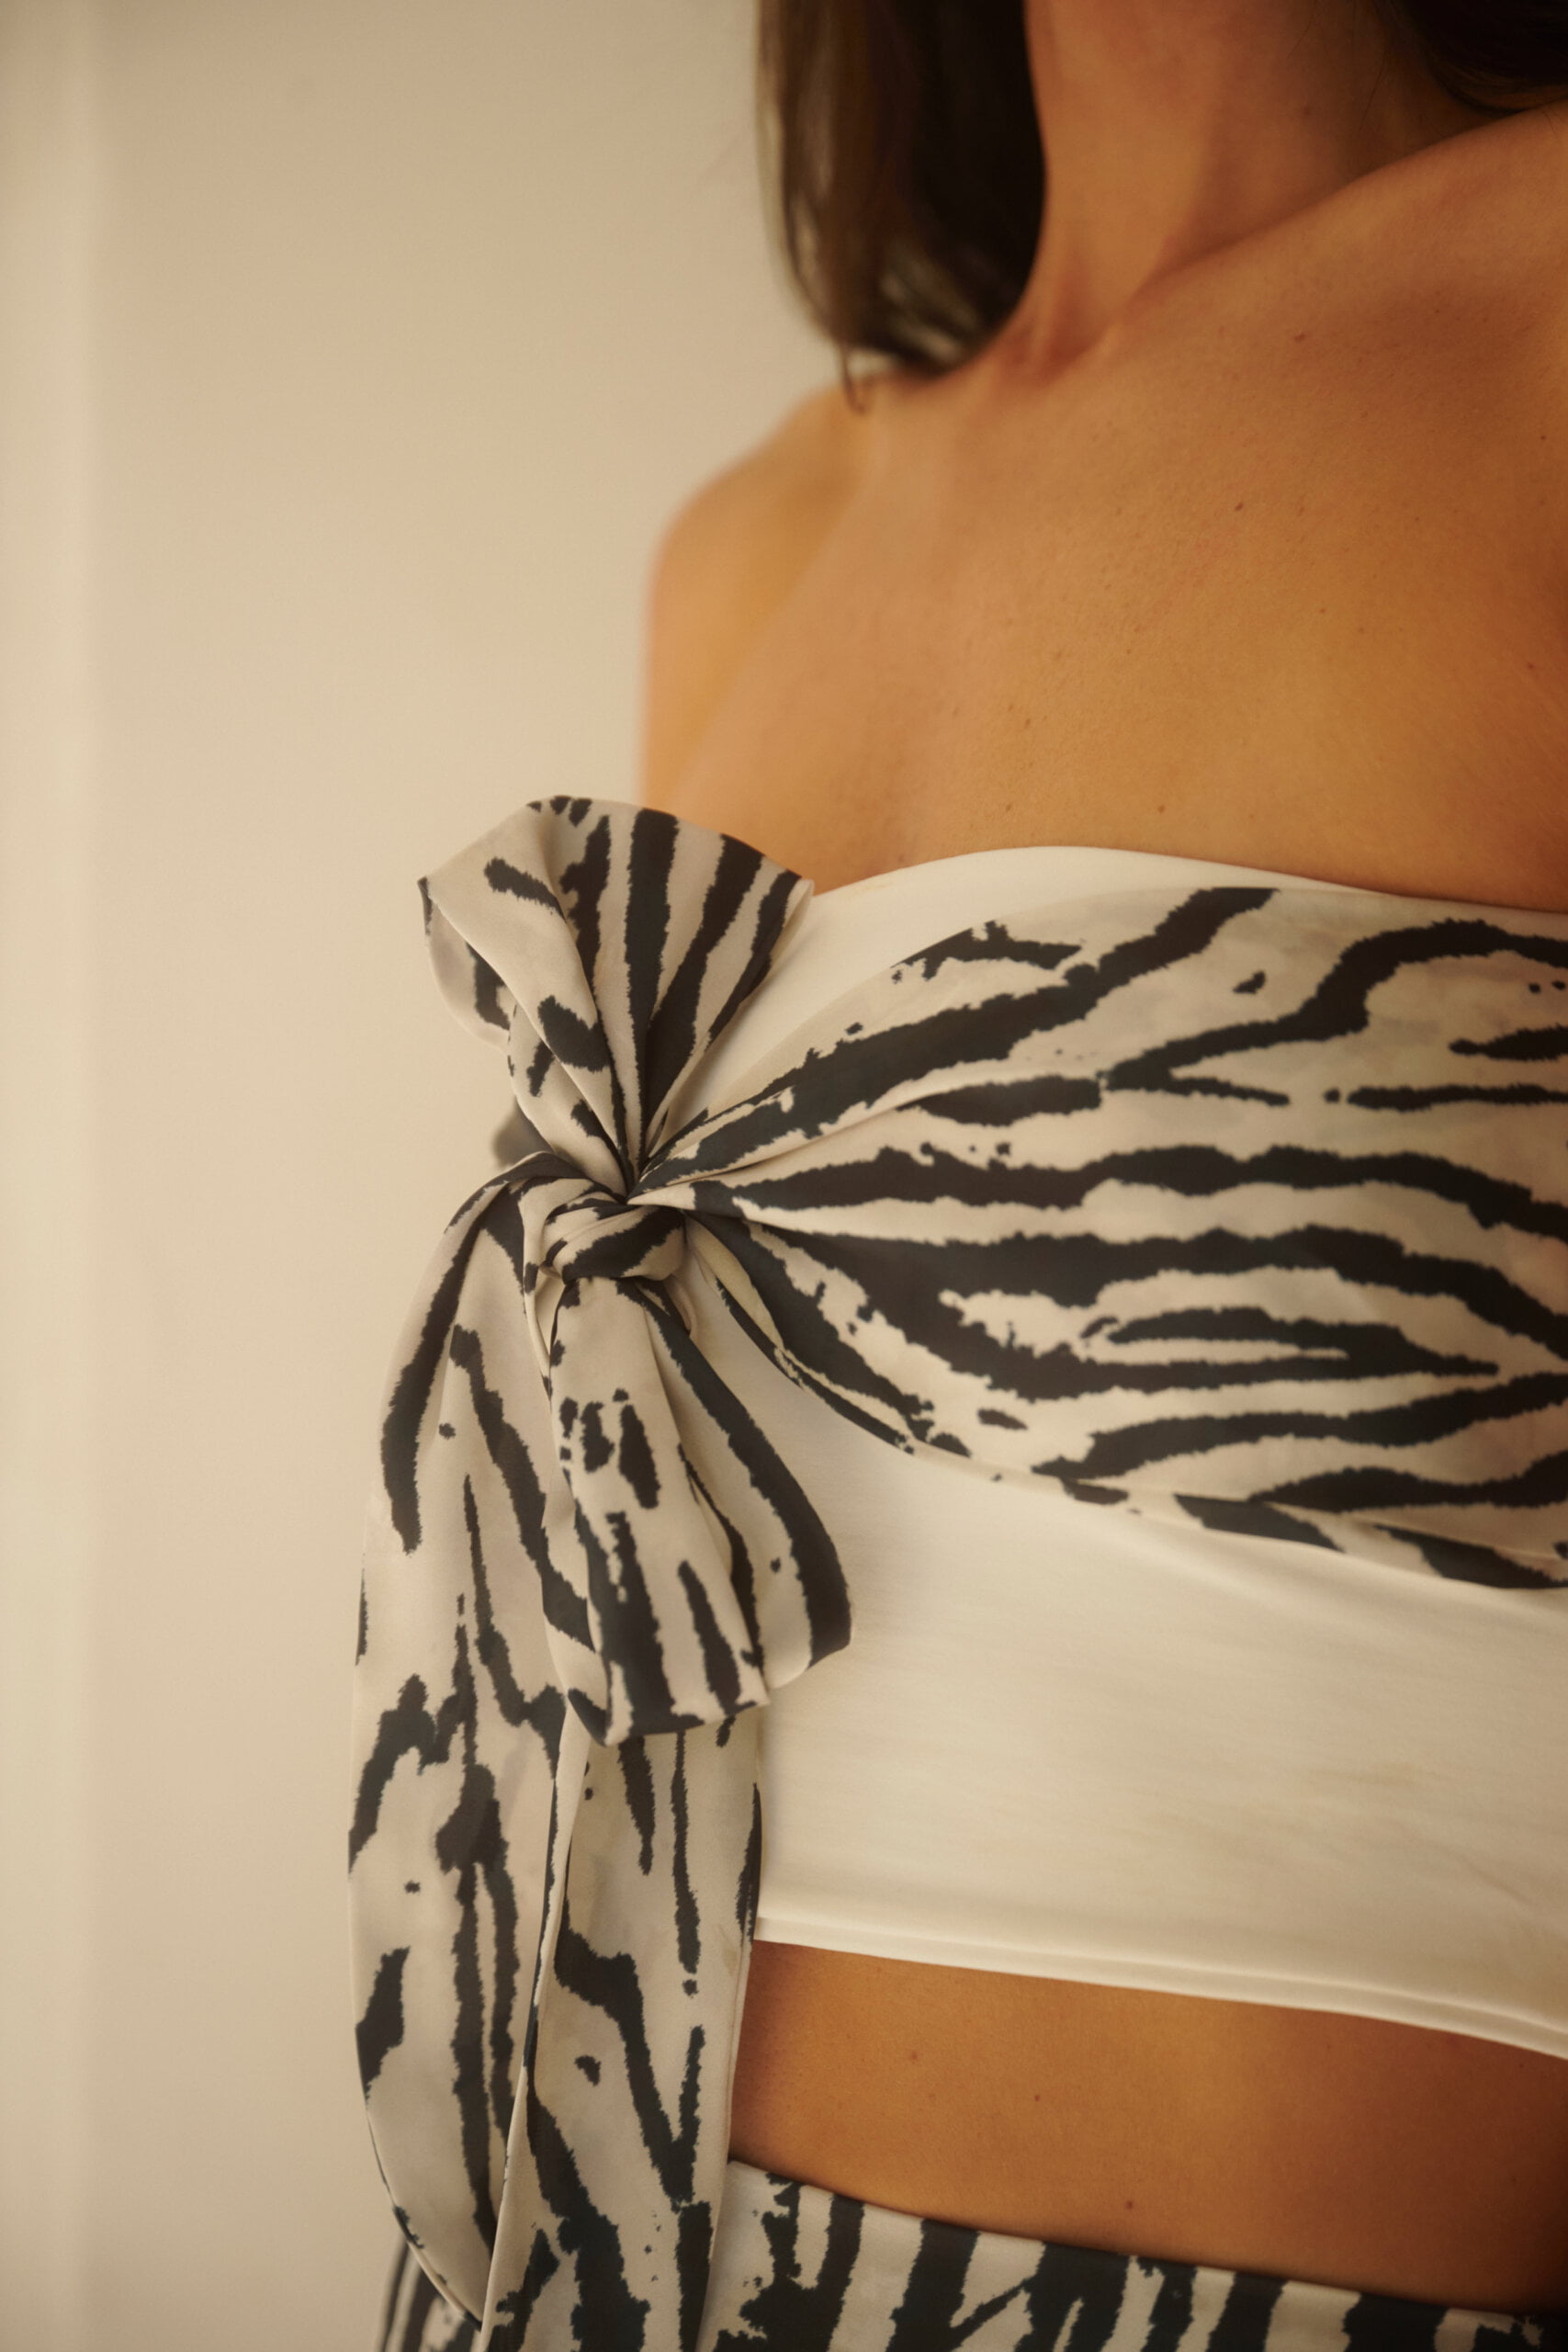 Falda Seda Zebra Magna , perfecto para Conjunto de seda , falda de seda para conjunto de fiesta. combínalo con este top Mossa 